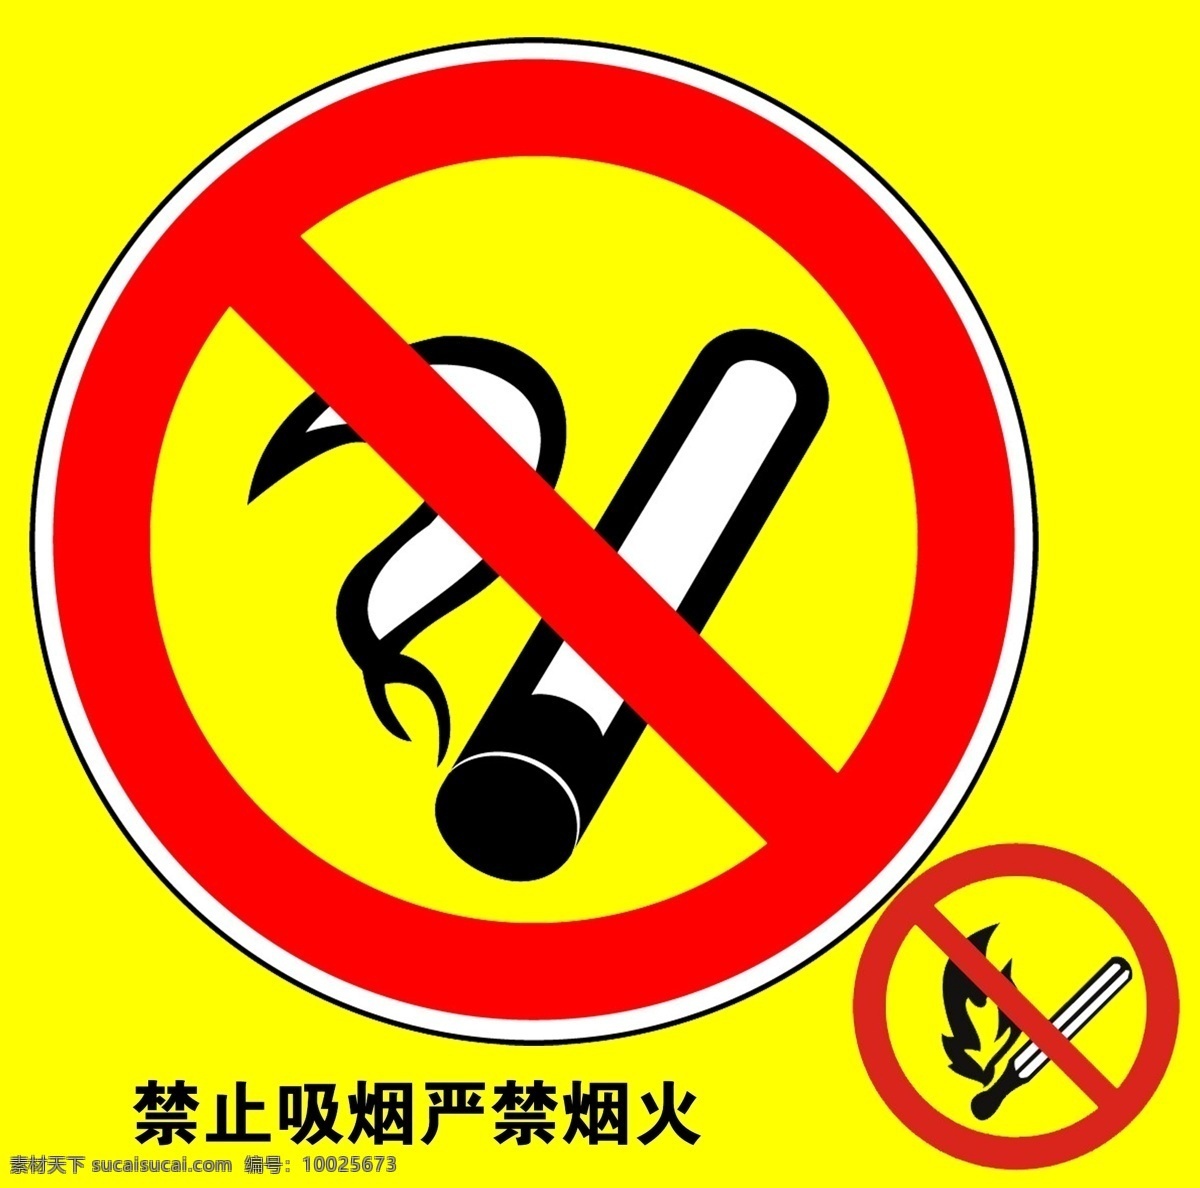 禁止吸烟 禁烟标识 严禁烟火 标志设计 广告设计模板 源文件